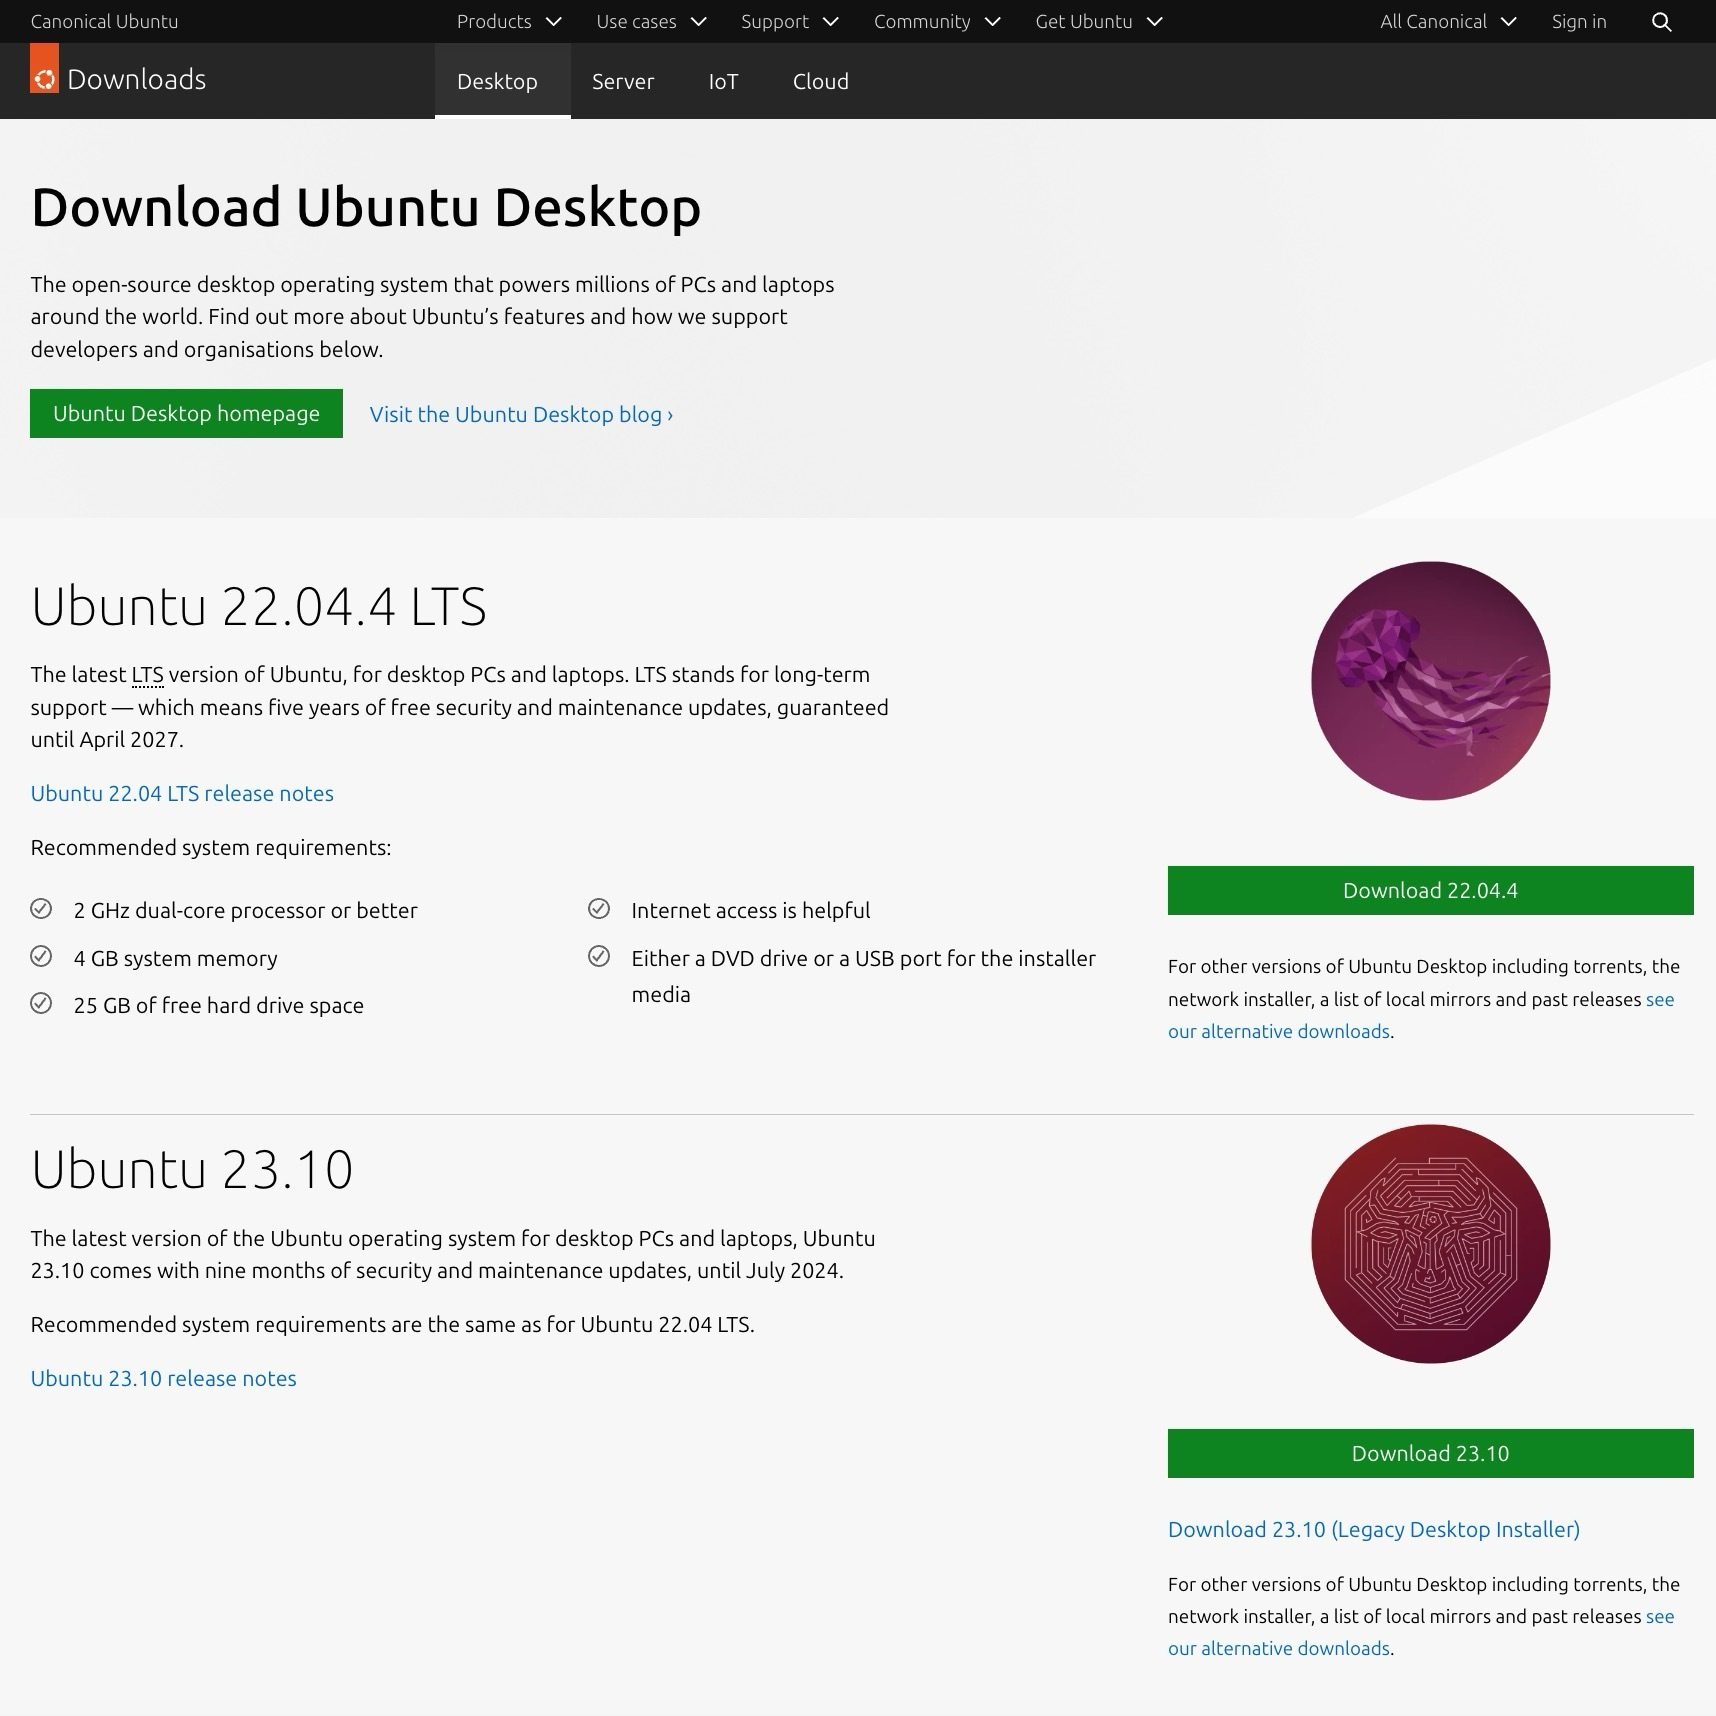 Download von Ubuntu Desktop - ISO-Datei für die Installation herunterladen